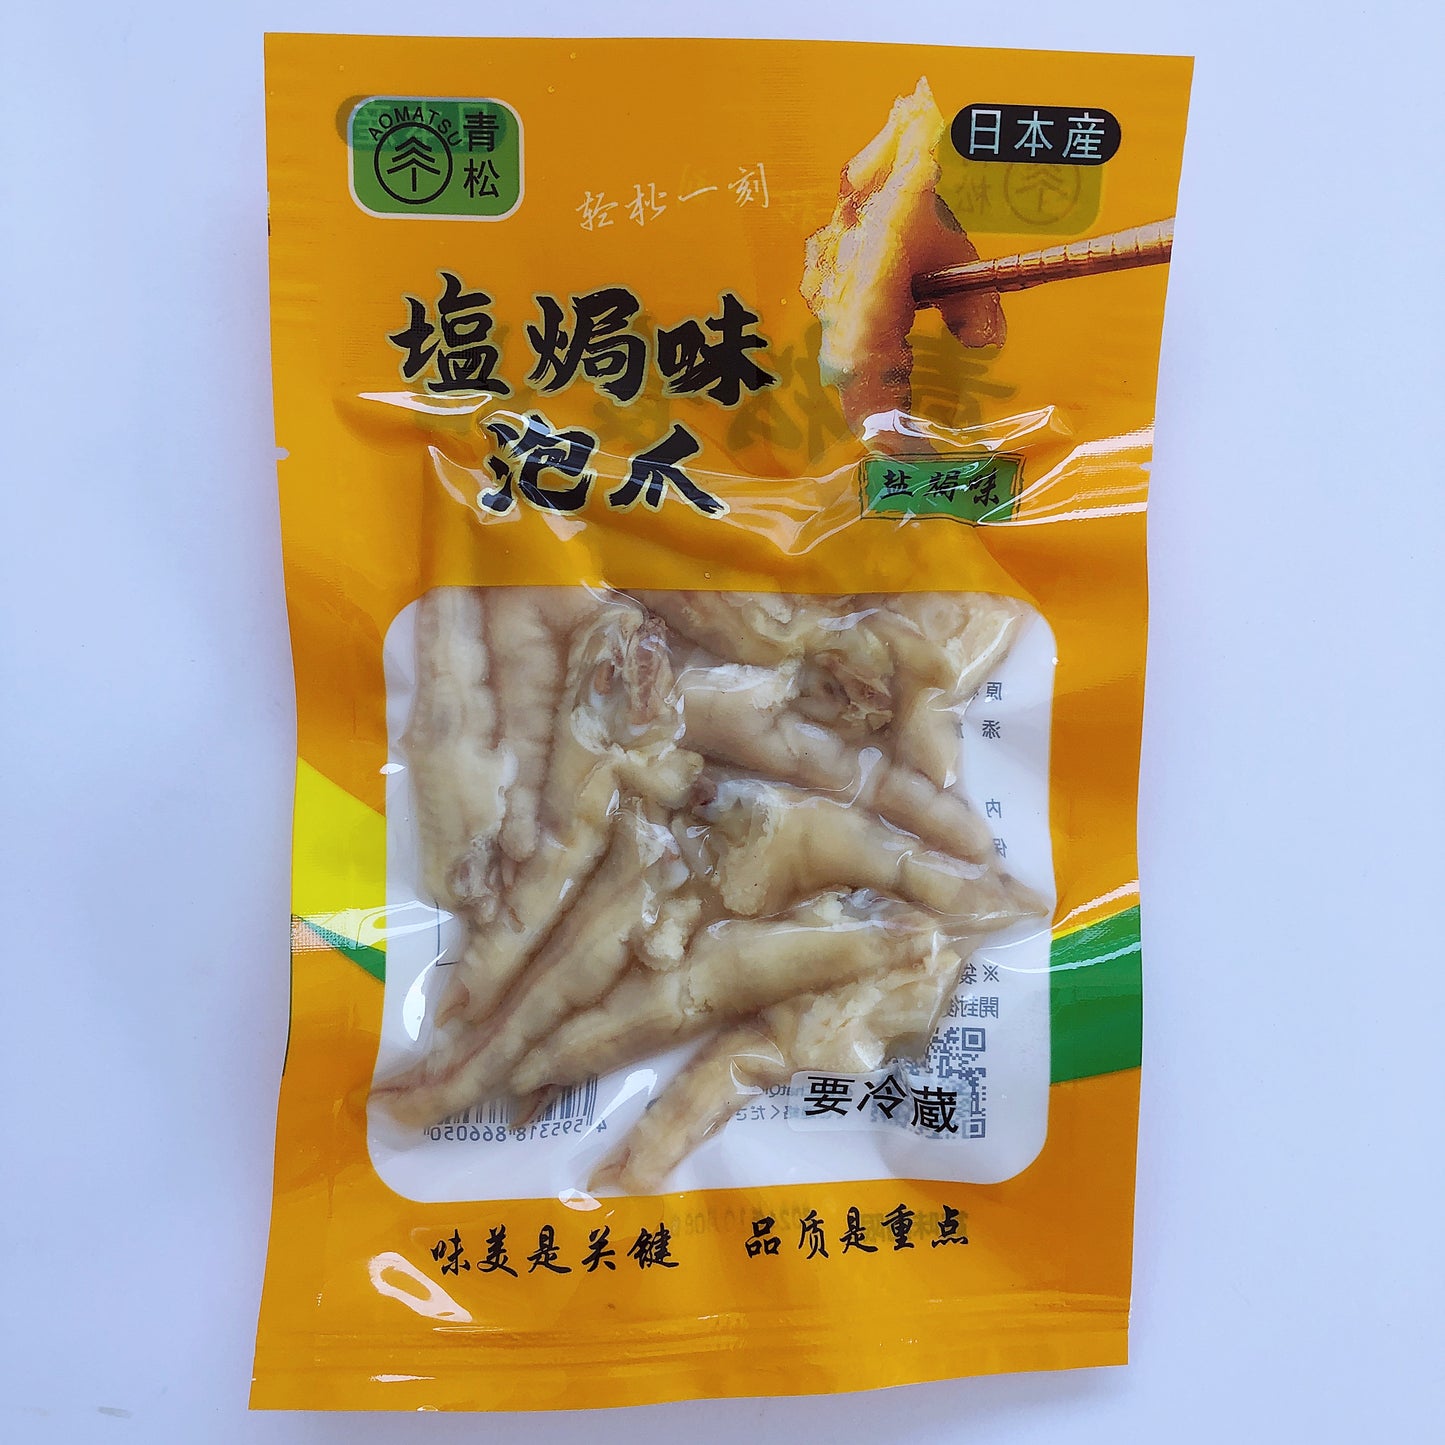 青松塩焗鶏爪100g *5袋 日本国内加工